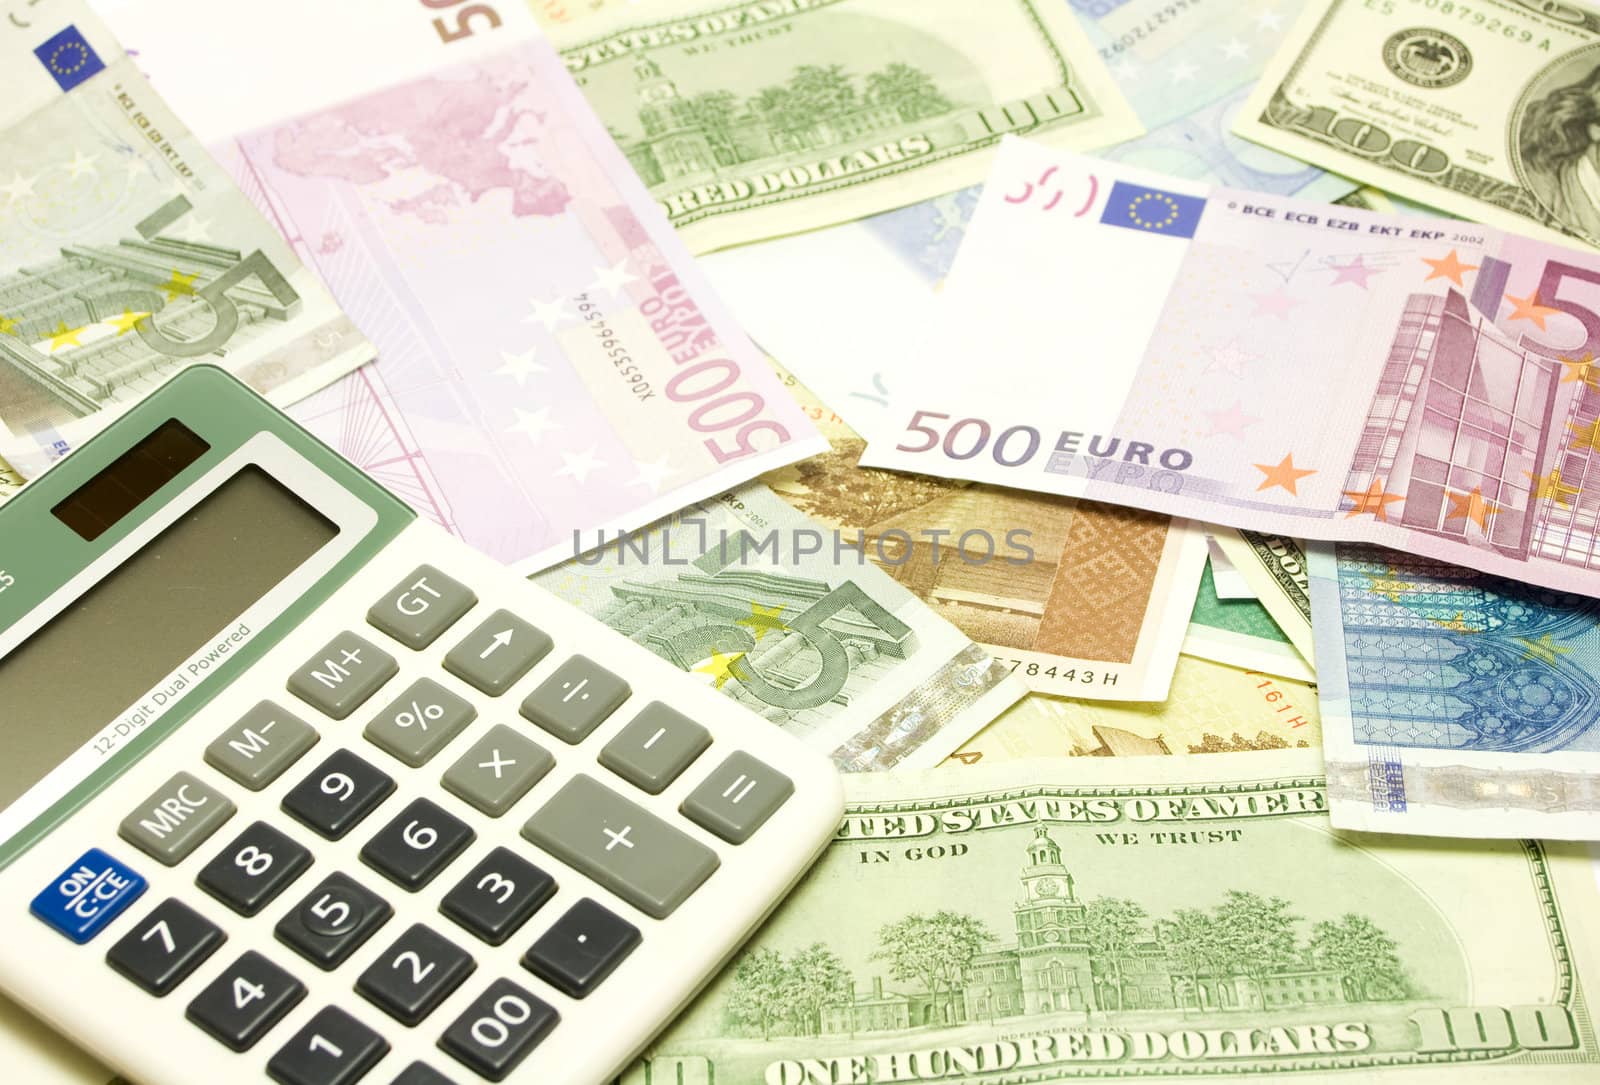 Dollar, euro, lat banknotes and calculator